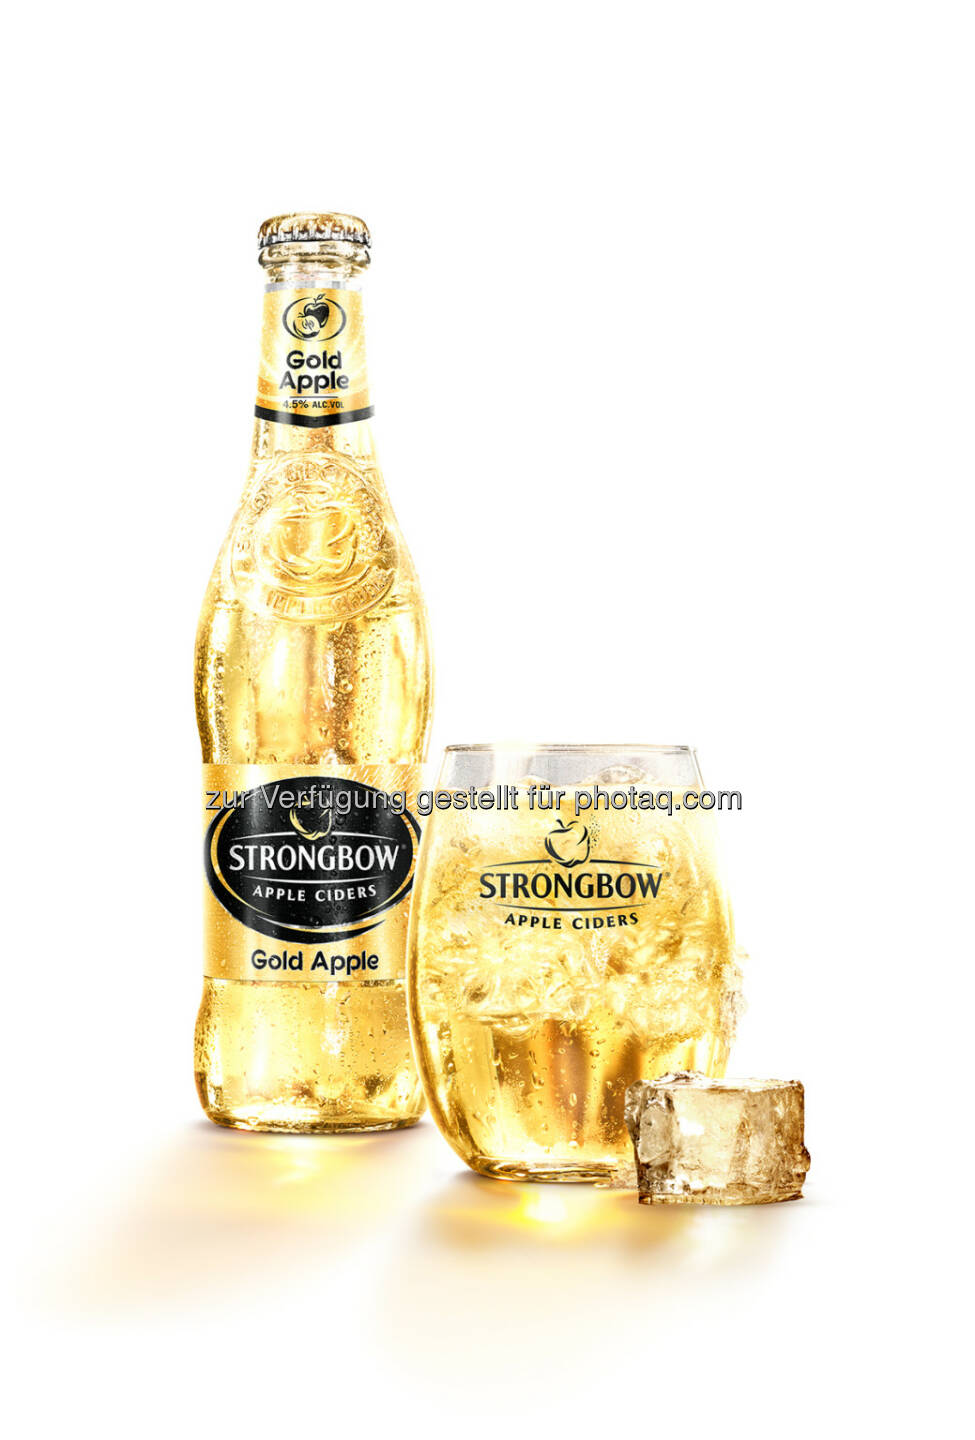 Brau Union Österreich AG: Brau Union Österreich startet im April mit drei neuen Sorten der Cider-Marke Strongbow